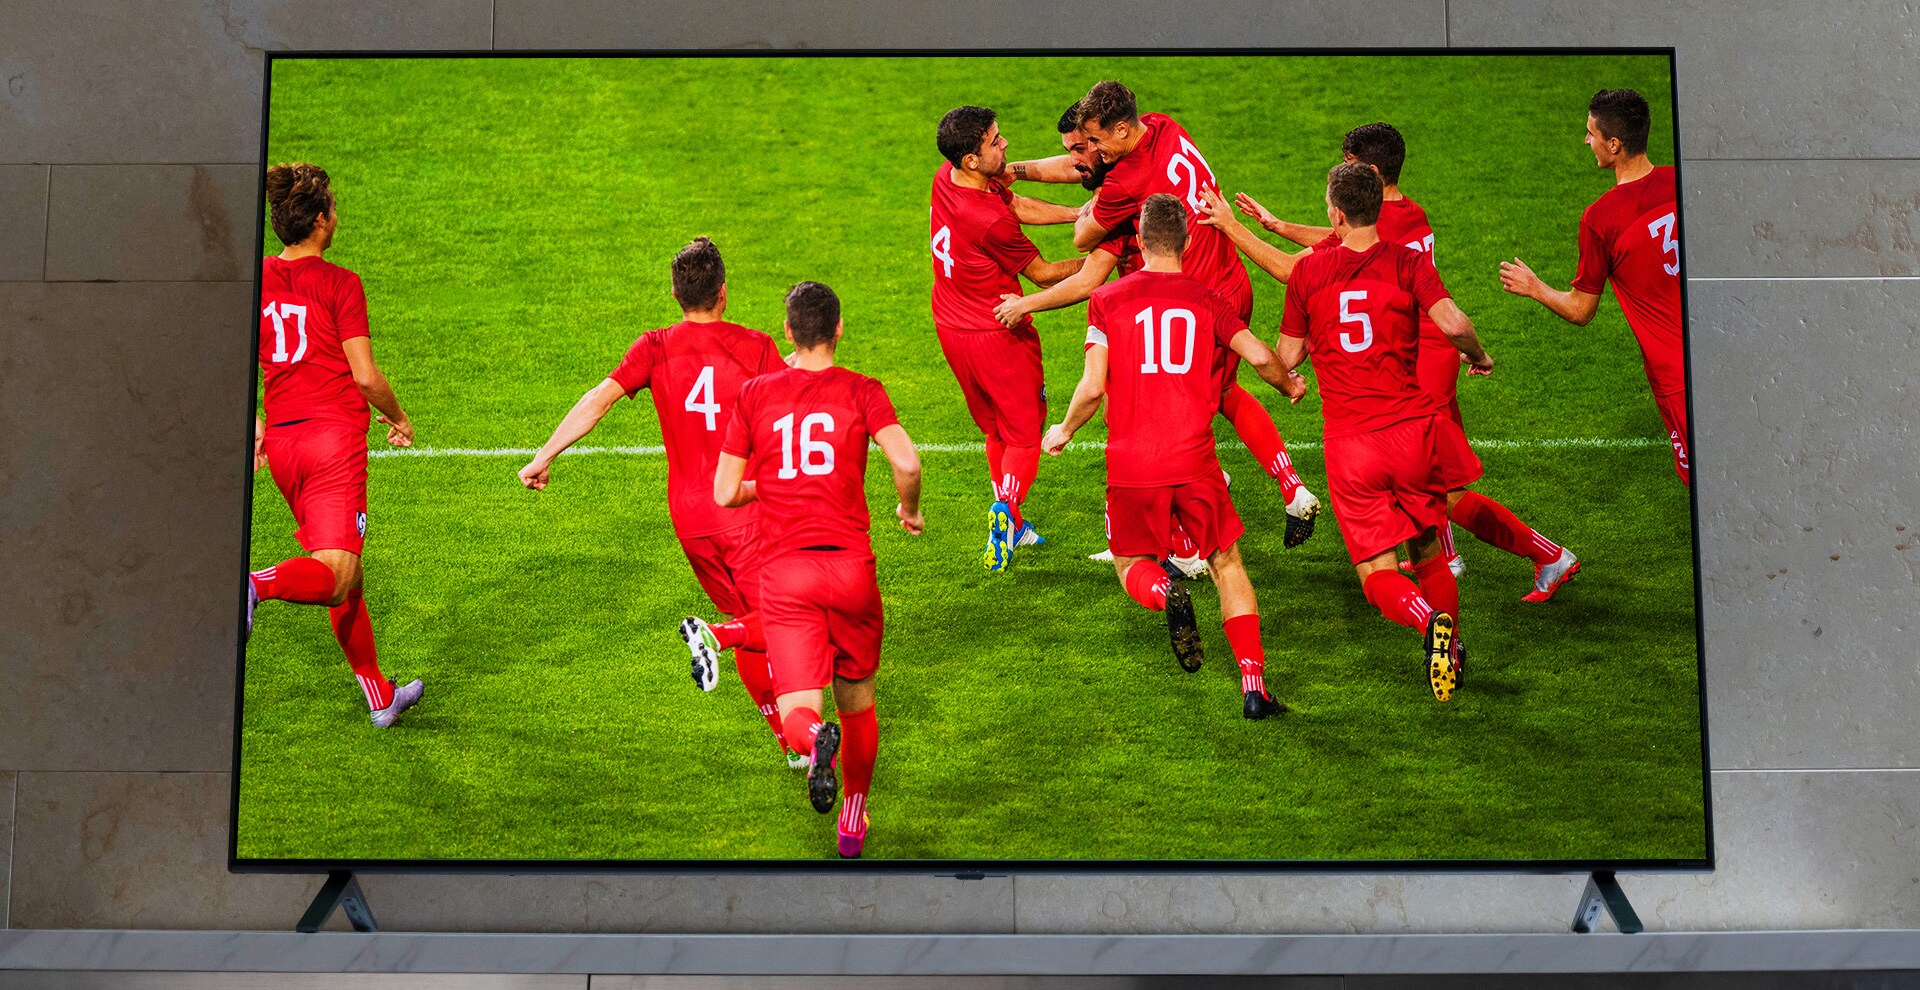 Et NanoCell-TV står på en fod. Fodboldspillere jubler.